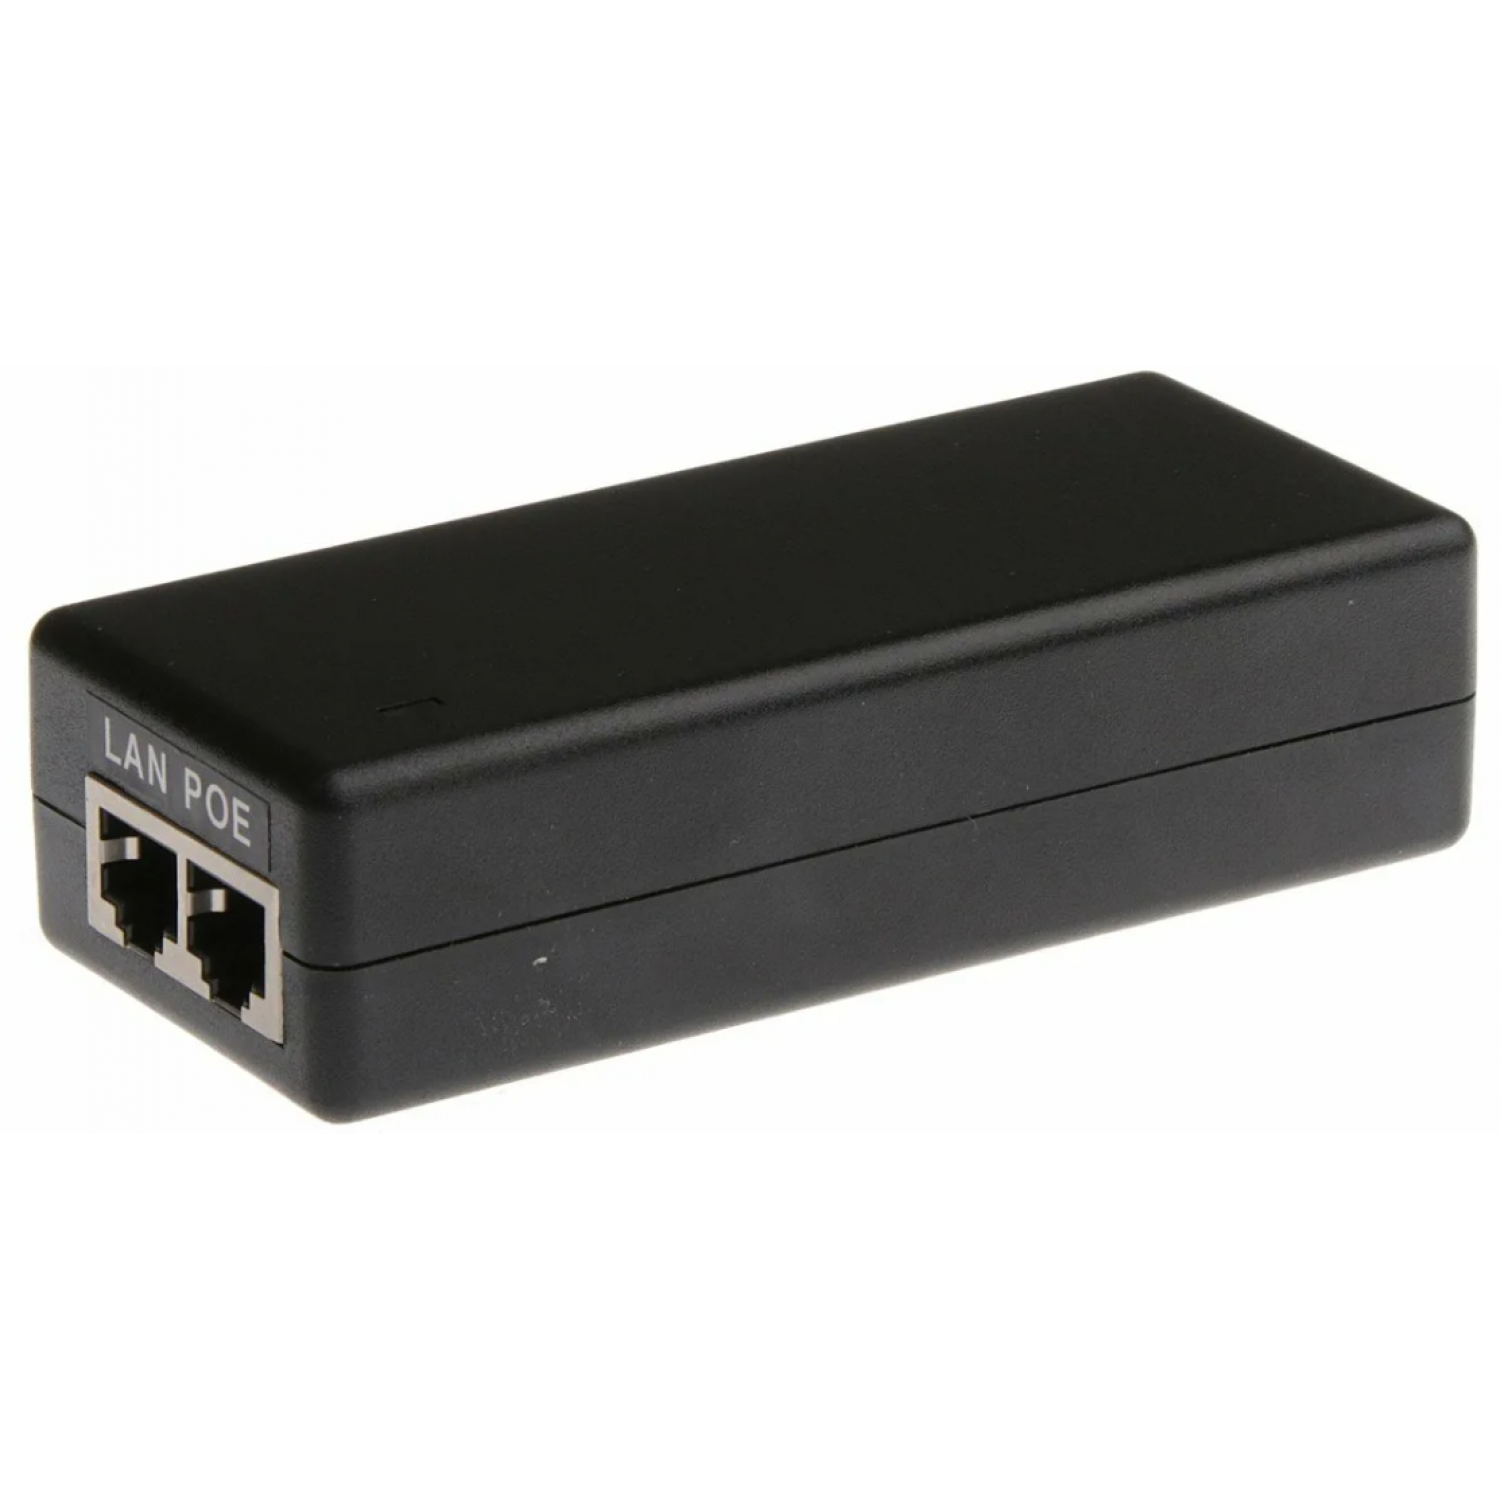 Блок питания Gigabit Ethernet Adapter with POE 48V 0.5A (HSG24-4800) Питание POE оборудование